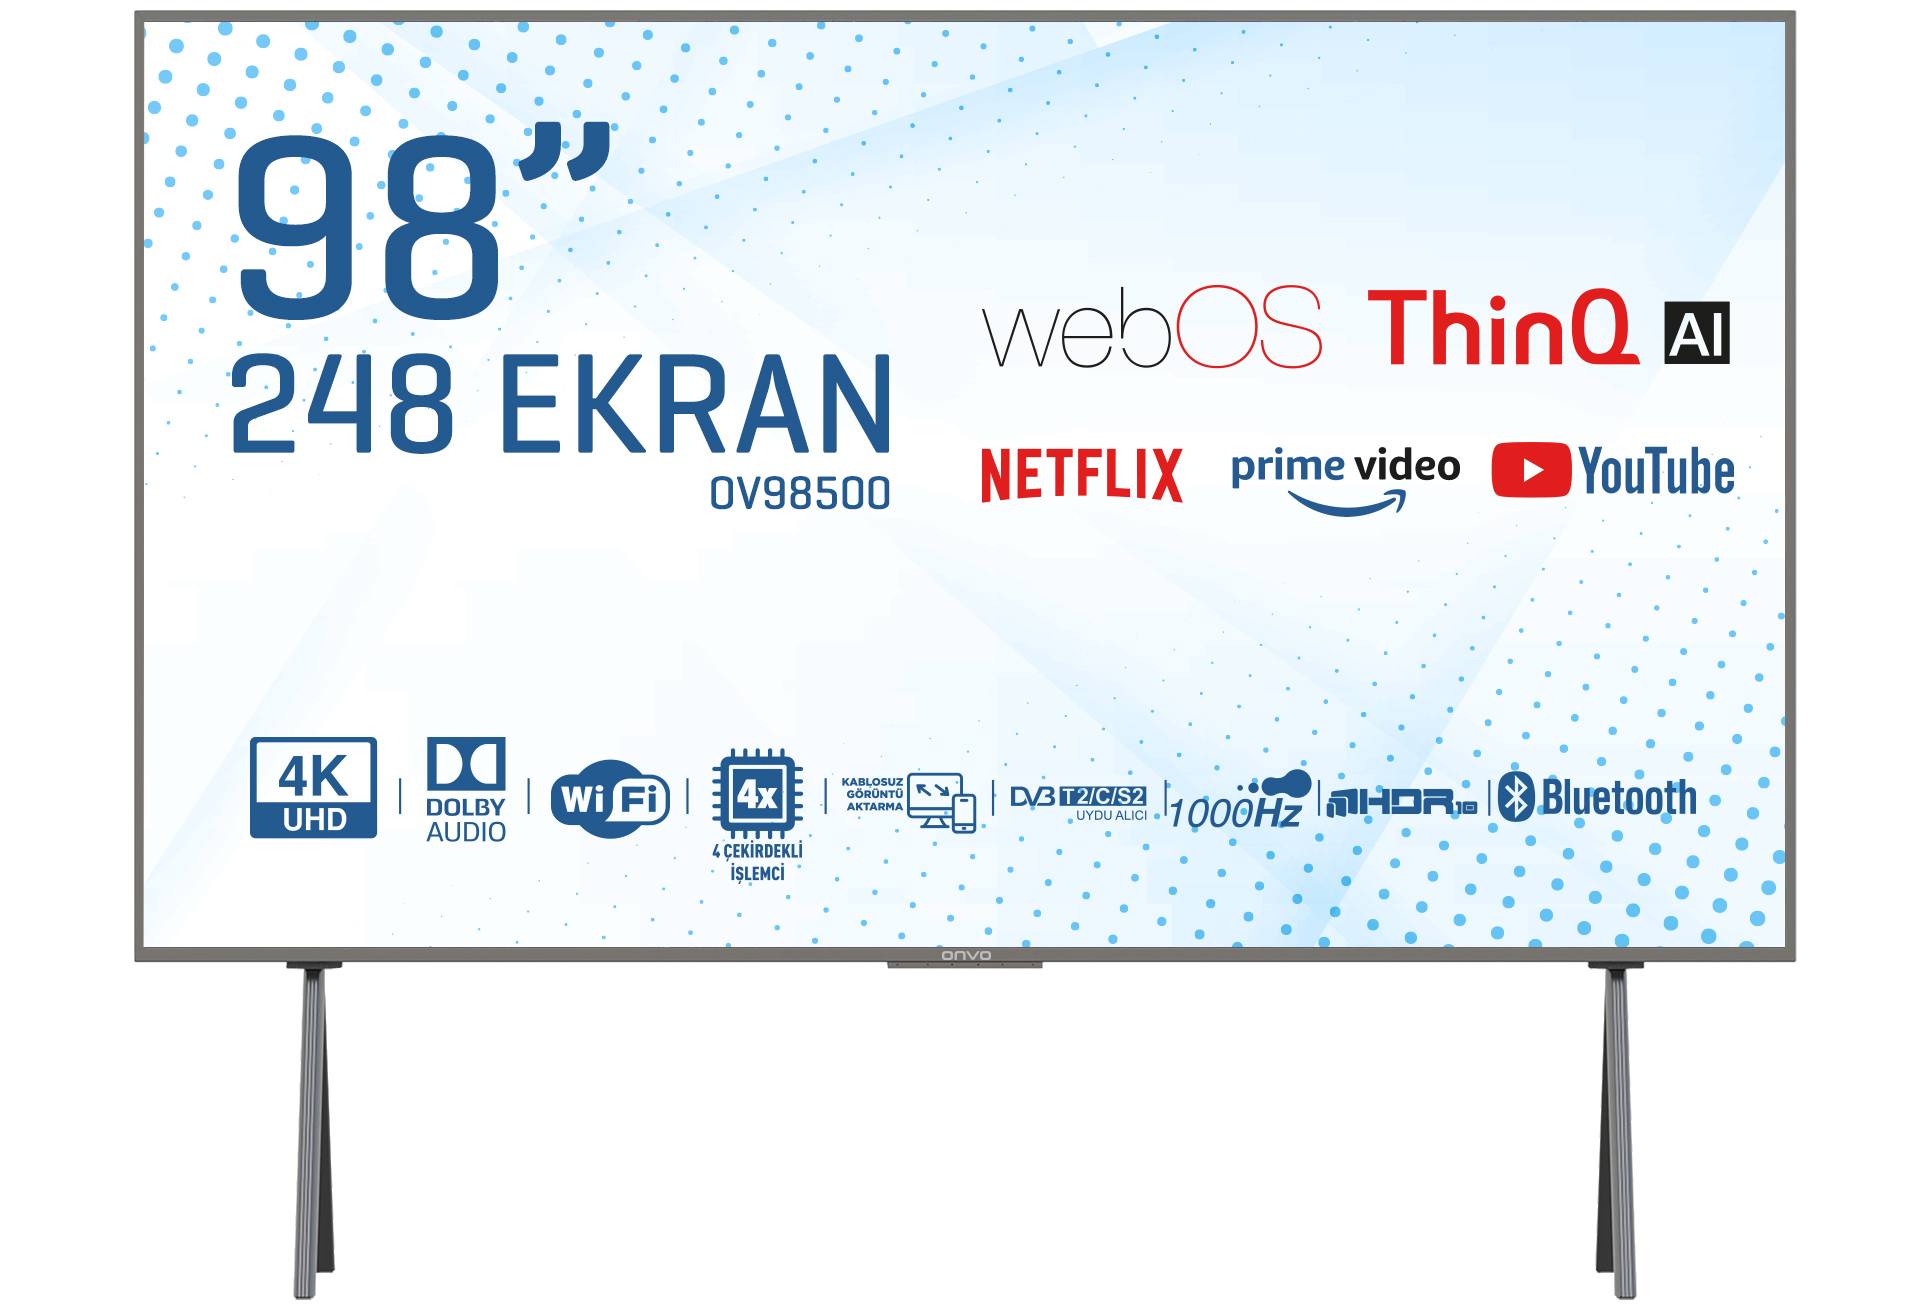 OV98500 4K Ultra HD 98 inç 248 Ekran Uydu Alıcılı webOS Smart LED TV